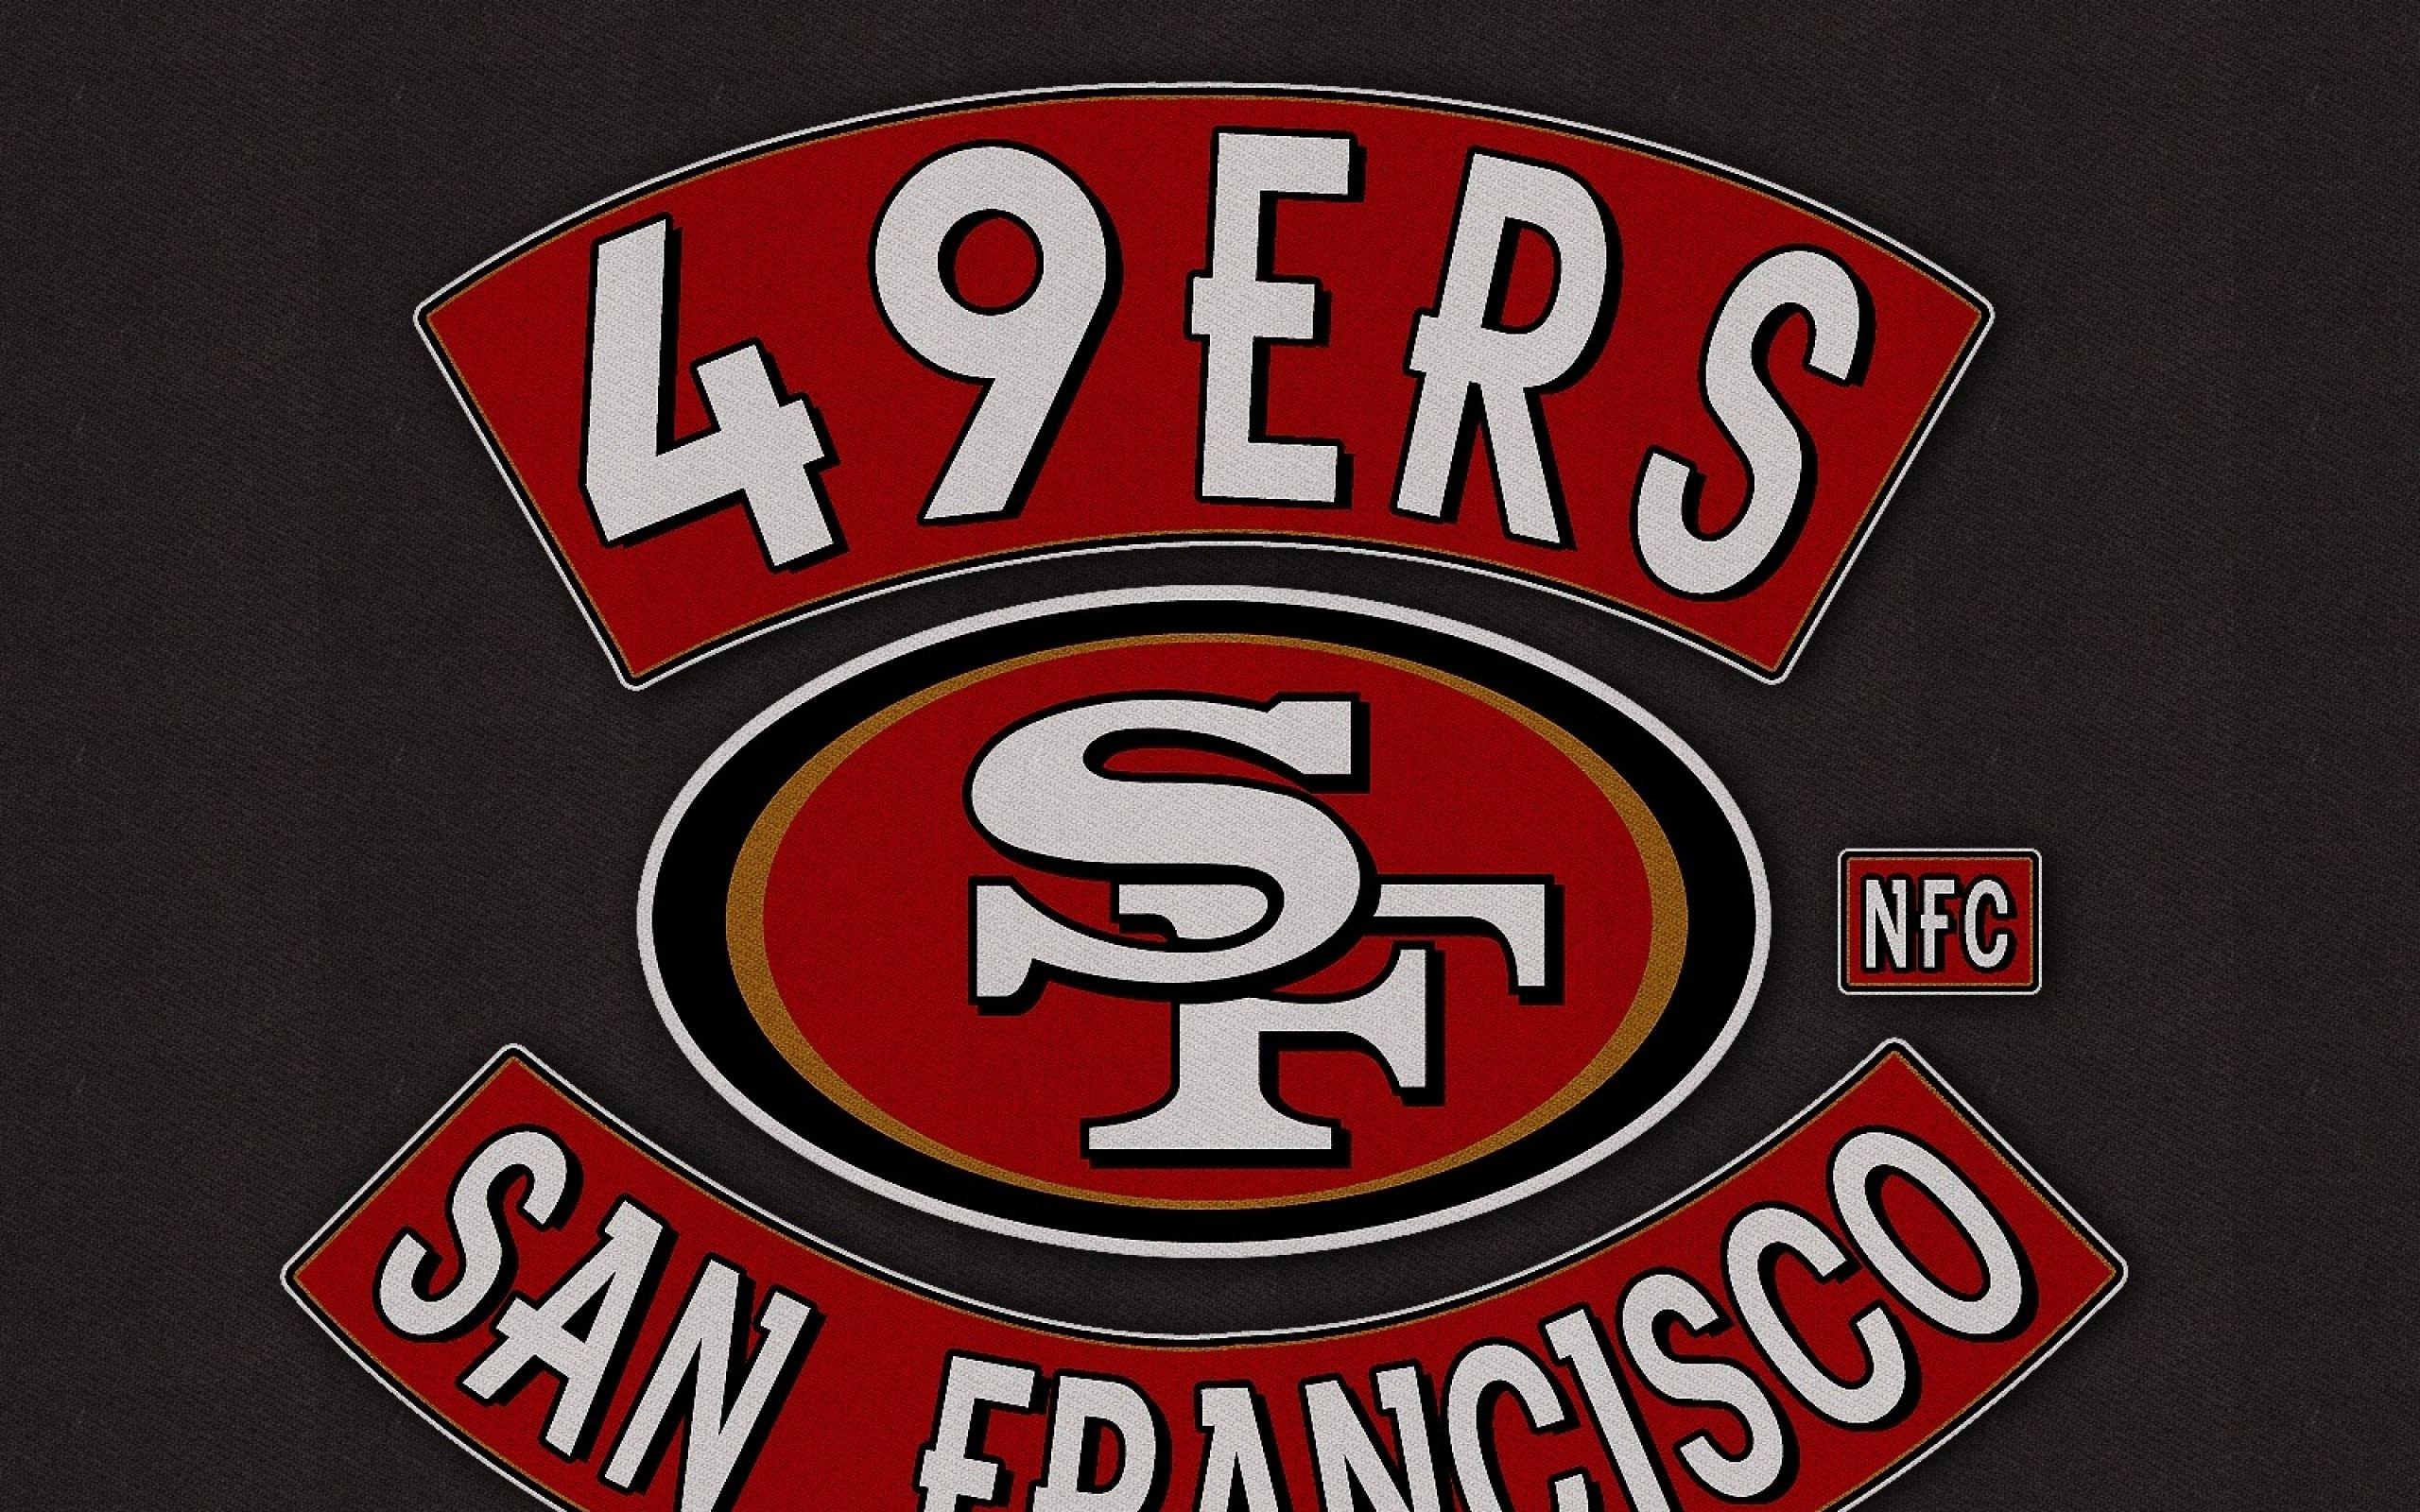 San Francisco 49ers Logo - San Francisco 49ers Logo HD Wallpapers | PixelsTalk.Net